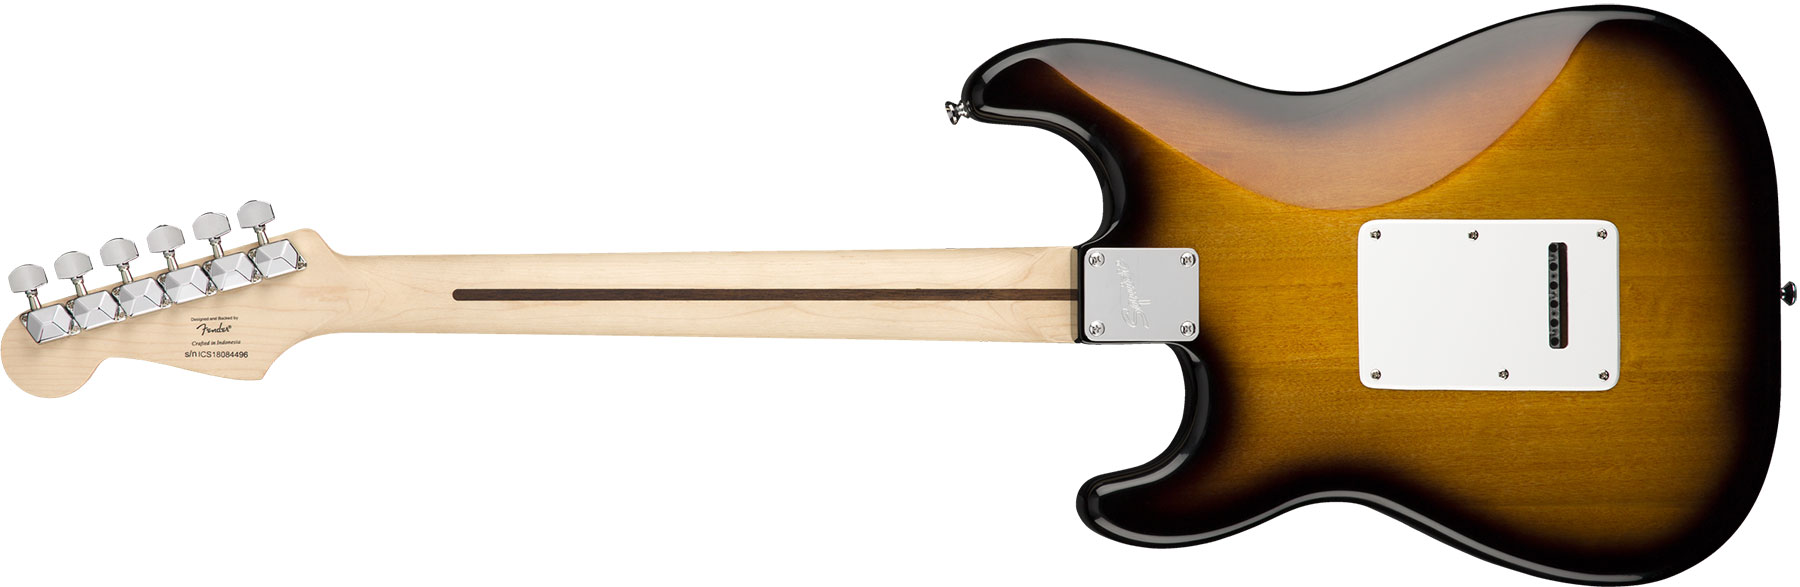 Squier Strat Sss Pack +fender Frontman 10g Trem Lau - Brown Sunburst - Pack Guitare Électrique - Variation 2